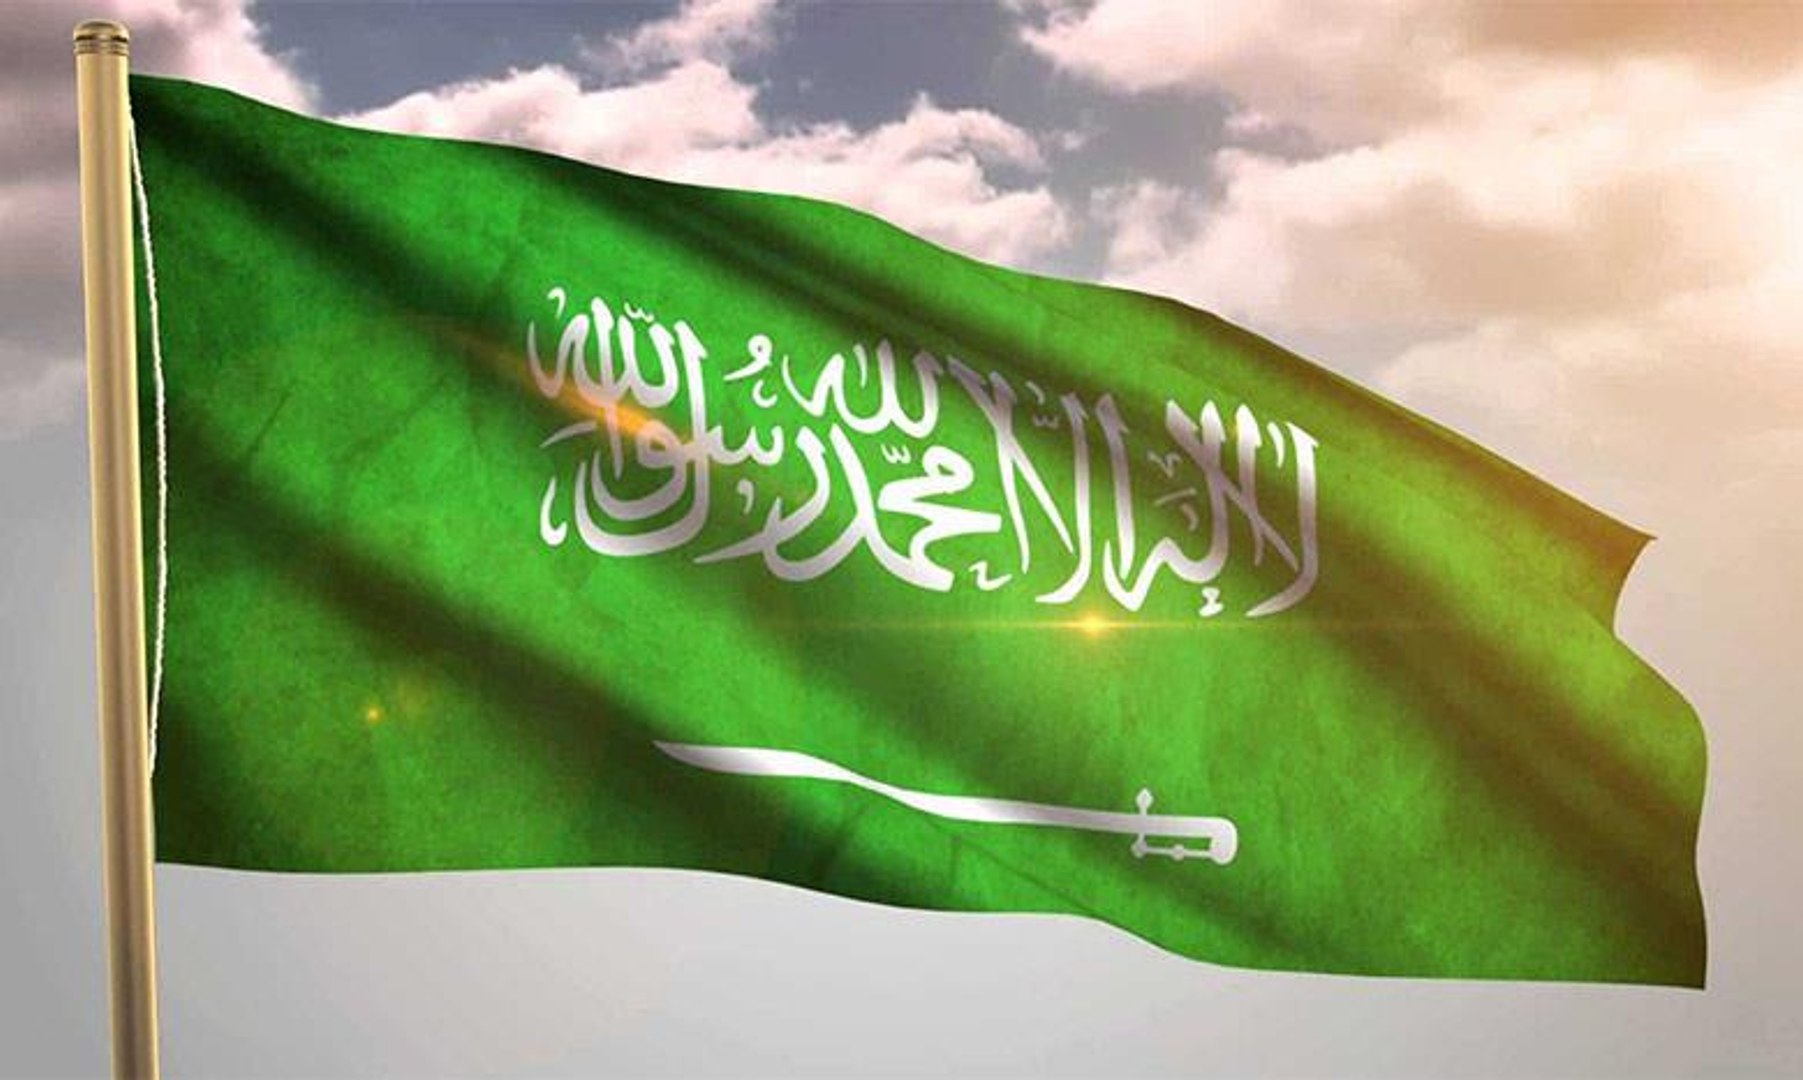 أبرز إنجازات المملكة العربية السعودية في عيدها الوطني الـ 89 - فيديو  Dailymotion